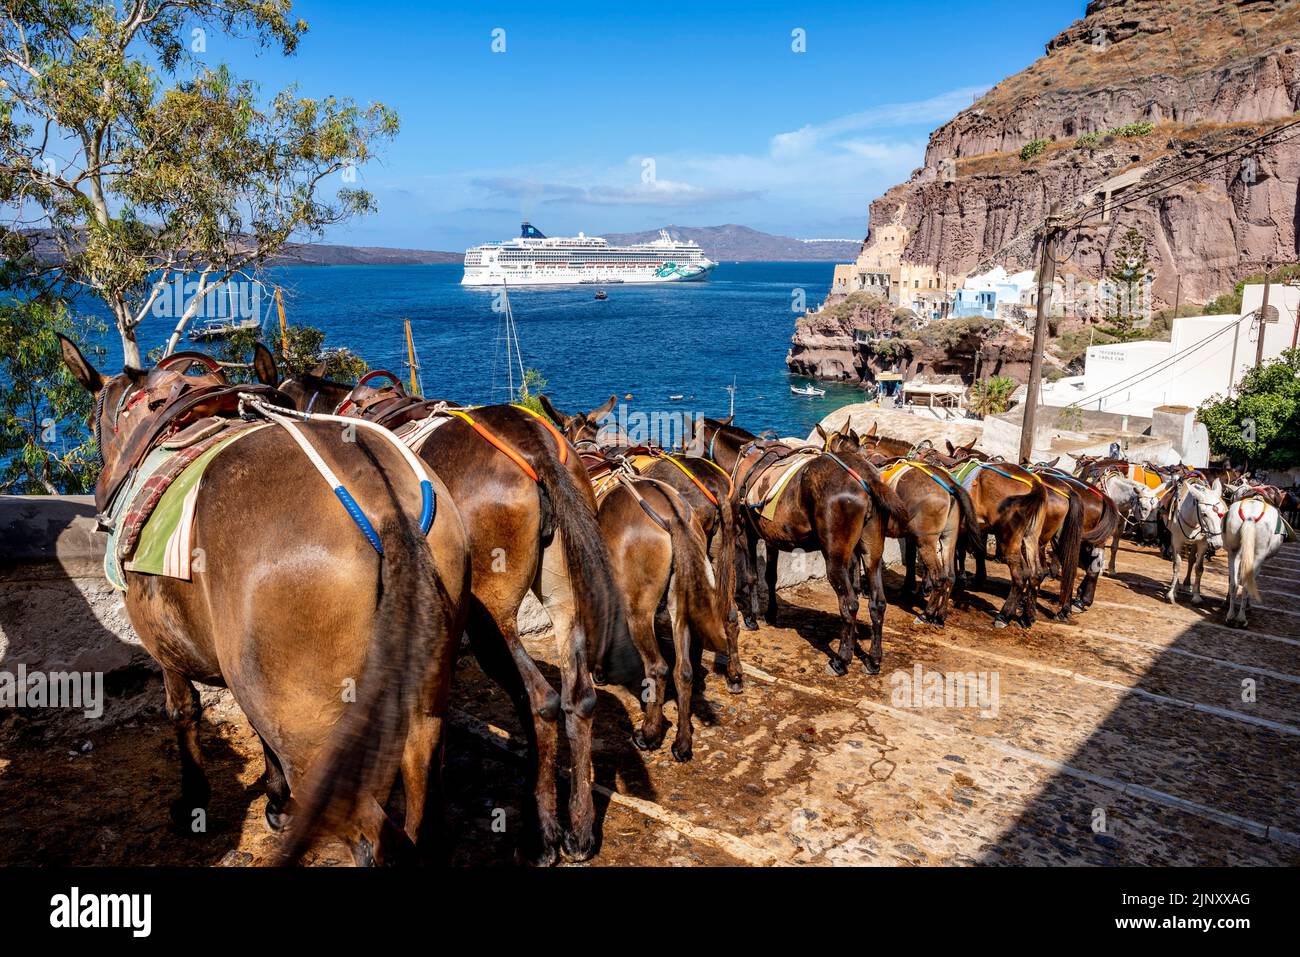 Un troupeau d'ânes attendent pour transporter les touristes montant du port d'Oia à la ville d'Oia, Santorini, Iles grecques, Grèce. Banque D'Images